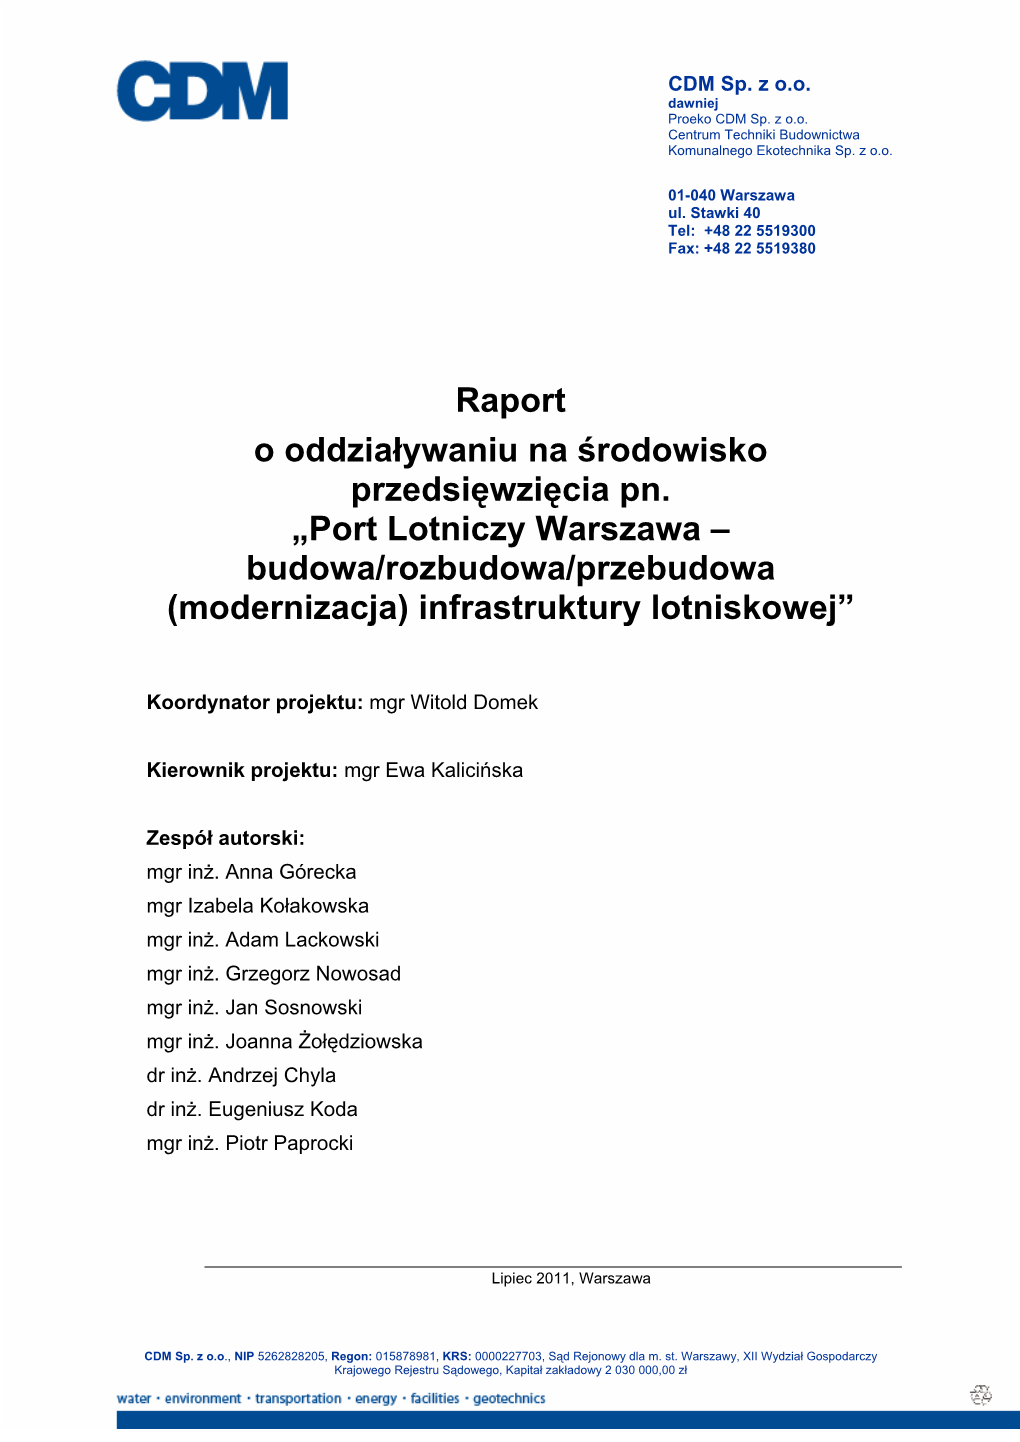 Port Lotniczy Warszawa – Budowa/Rozbudowa/Przebudowa (Modernizacja) Infrastruktury Lotniskowej”